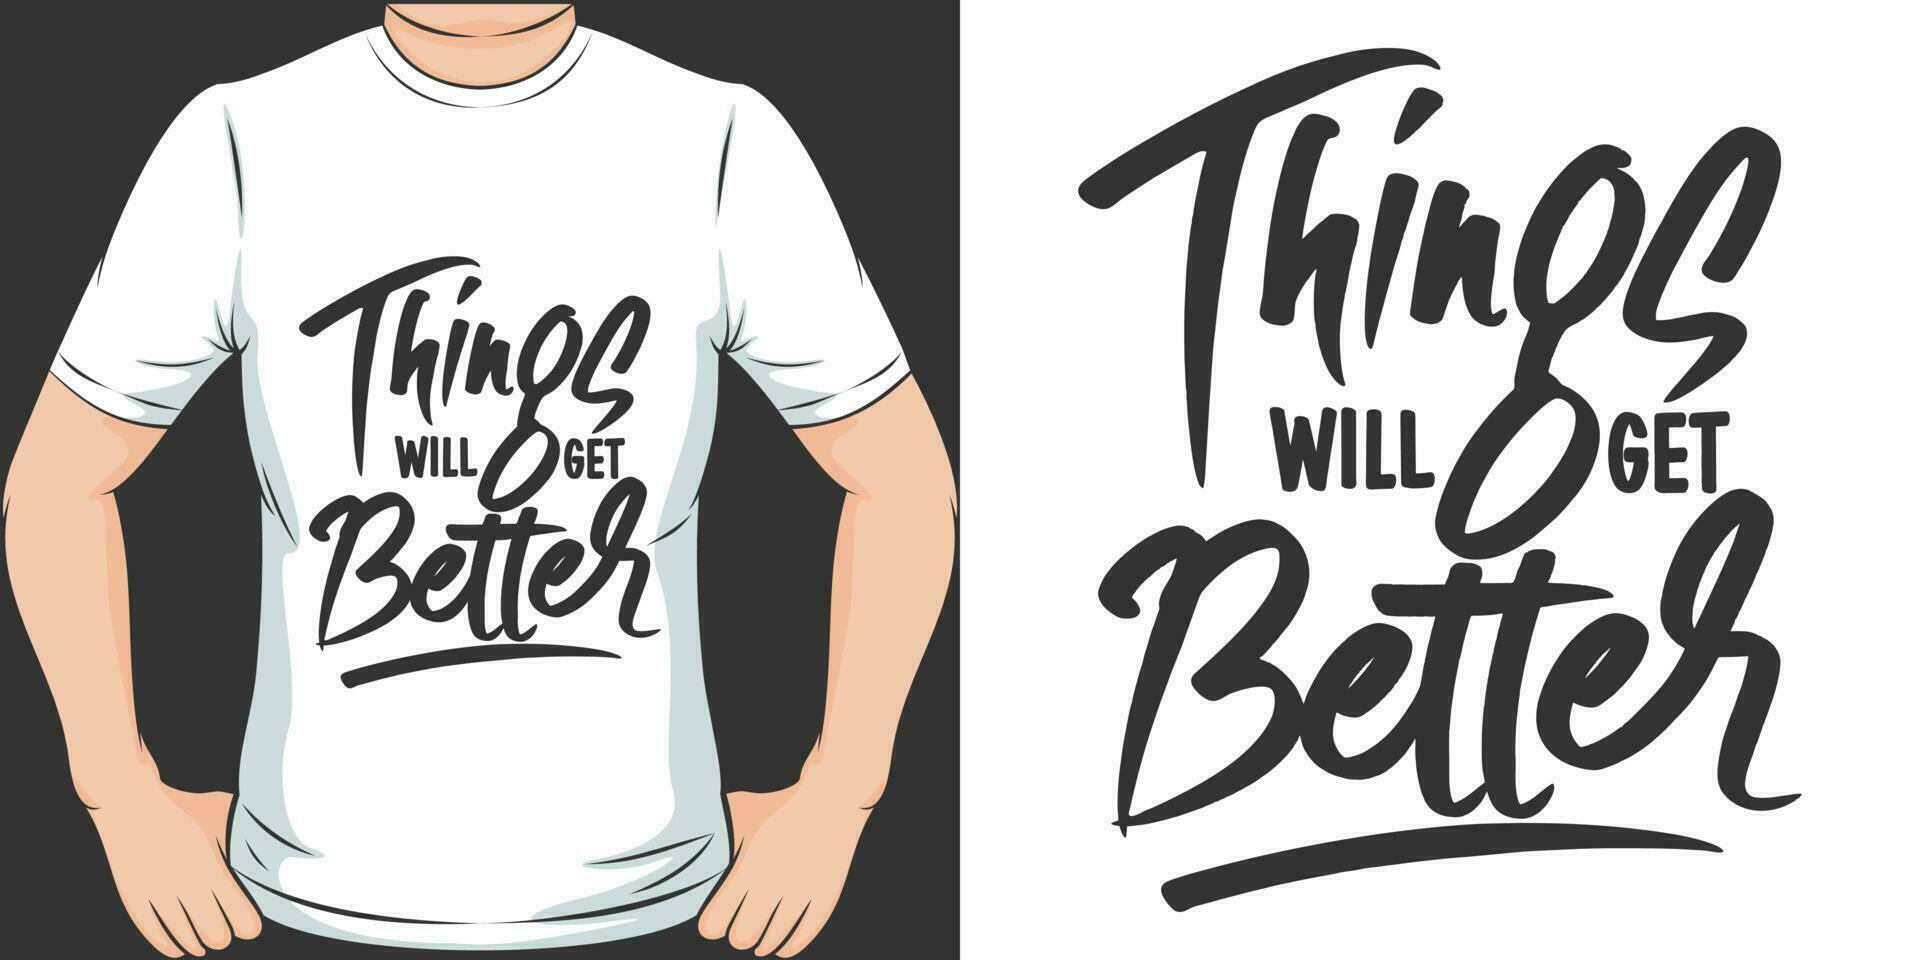 cose volontà ottenere meglio, motivazionale citazione maglietta design. vettore